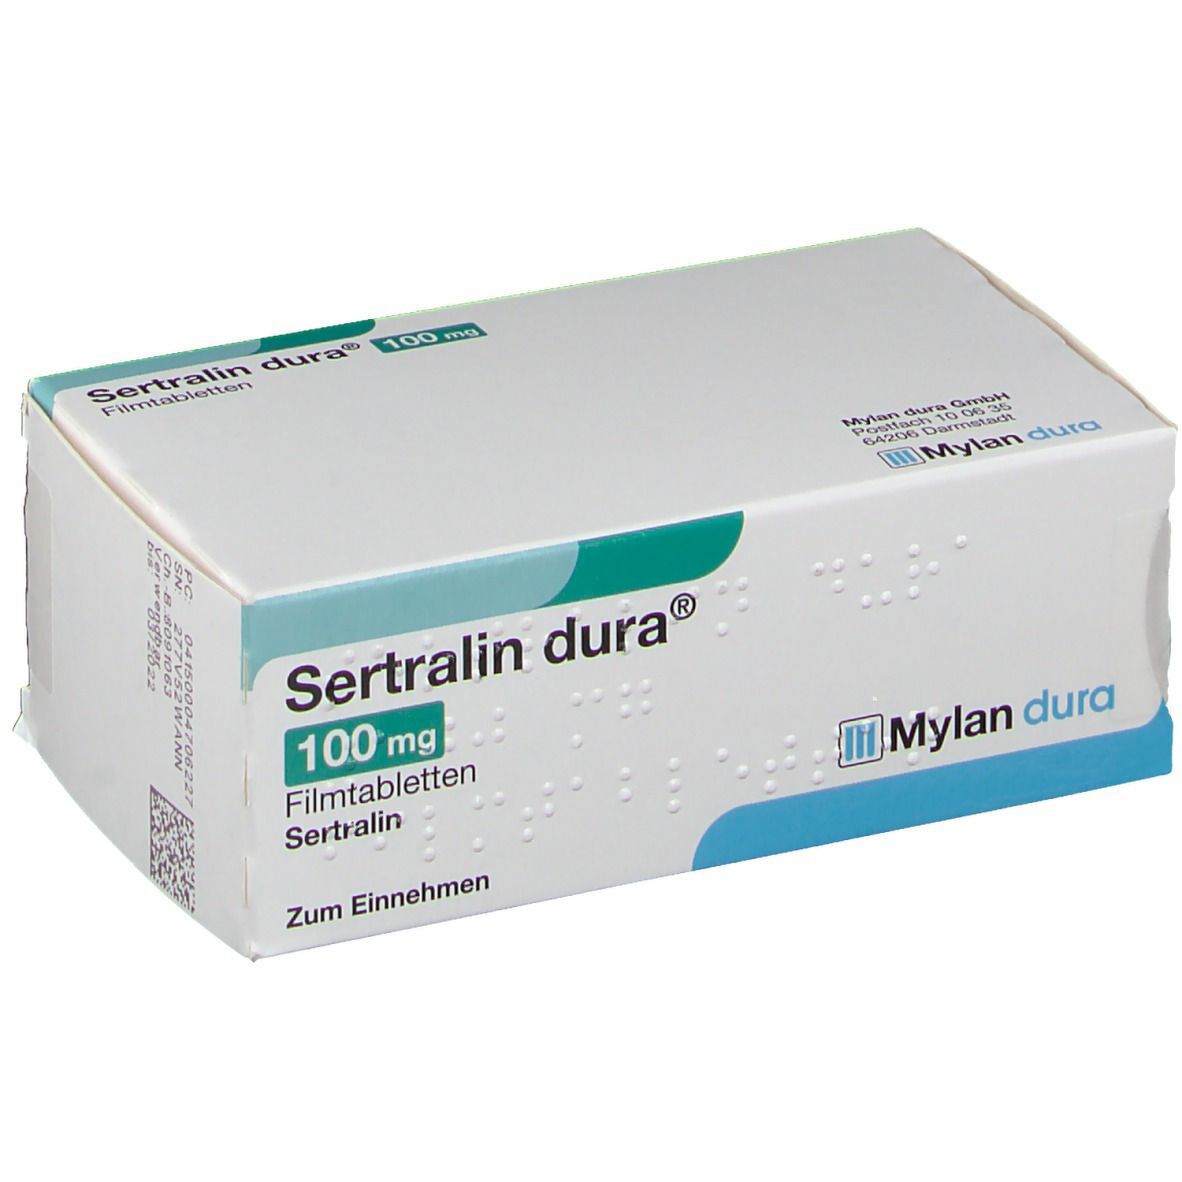 Sertralin dura® 100 mg